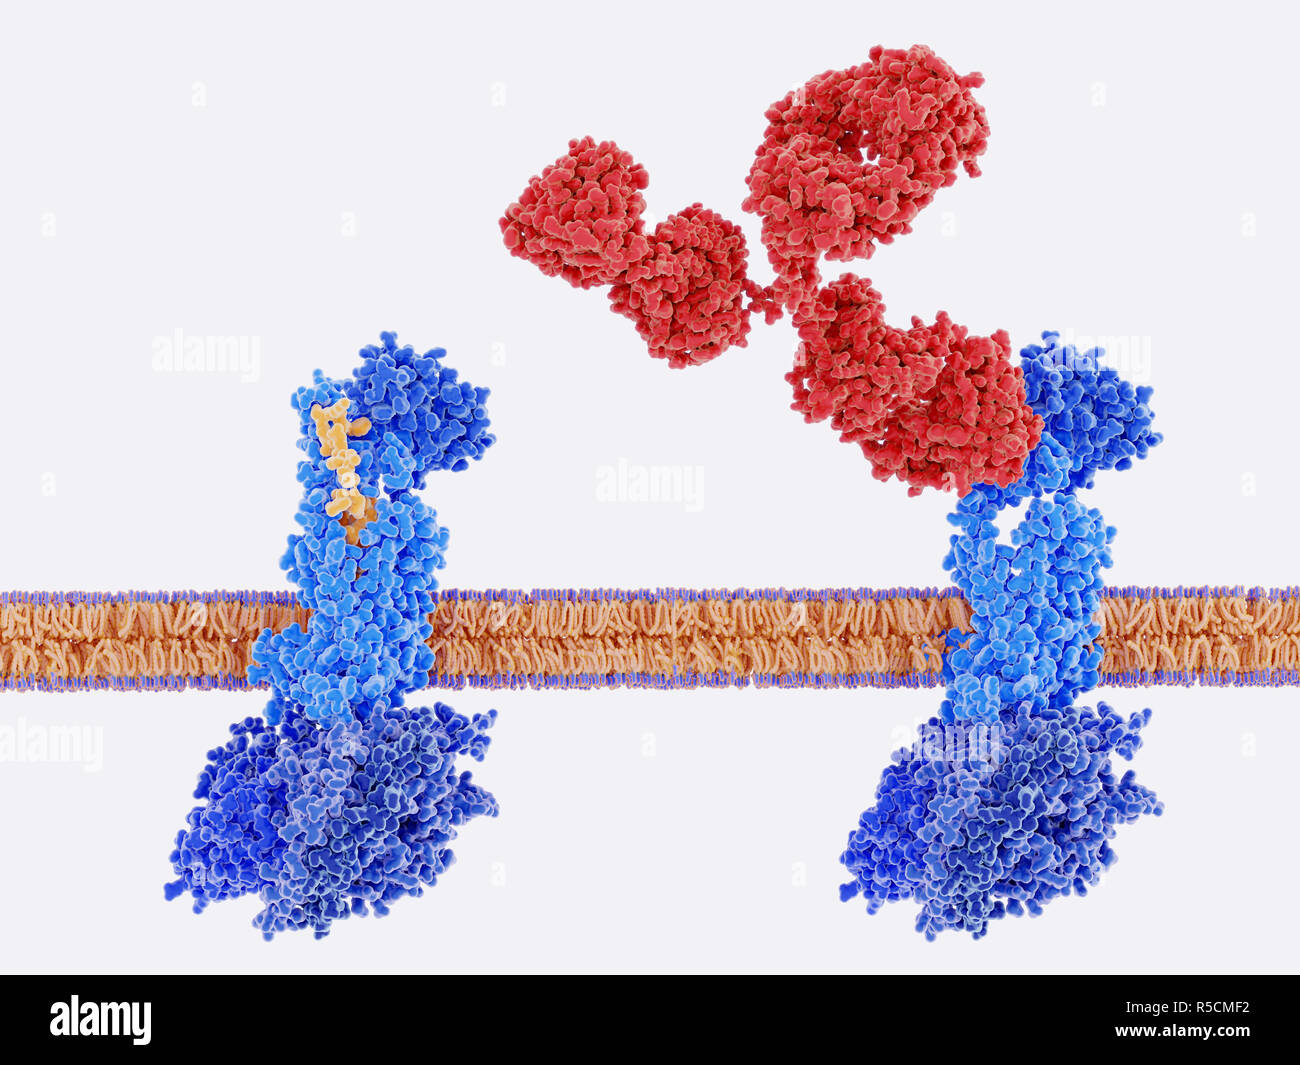 Migräne Therapie und Cgrp-Rezeptor, Illustration. Monoklonale Antikörper (rot) wird verwendet, um die Calcitonin gene-ähnliche Peptide (Cgrp)-Rezeptor (blau) blockieren. Für Links, die Calcitonin gene-ähnliche Peptide (CGRP, Gelb) bindet an seinen Rezeptor (blau). Dies geschieht auf den Membranen der Nervenzellen und glatten Muskelzellen in der zerebralen (Gehirn) Blutgefäße, Aktivierung einer Signalkaskade durch G-Proteine (Dunkelblau, unten), führt zu einer Erweiterung der Blutgefäße im Gehirn (Vasodilatation). Dies ist ein Faktor für Erkrankungen wie Migräne. Die Blockierung der Cgrp-Rezeptor reduziert die Anzahl der Migräneattacken. Stockfoto